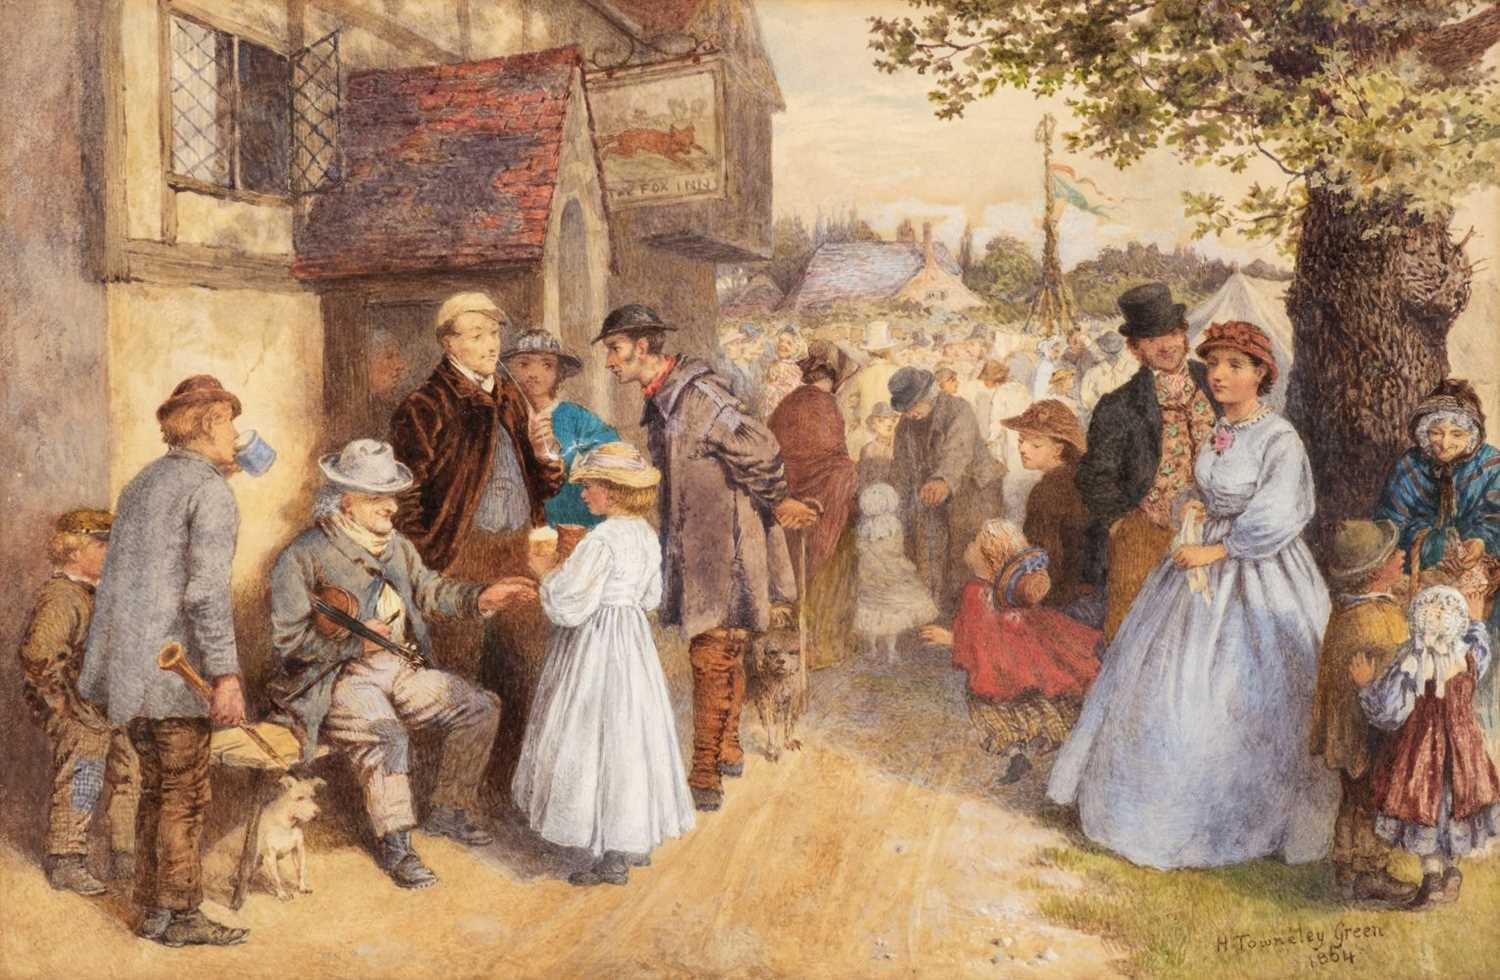 Lot 369 - Green (Henry Towneley, 1836-1899). A Village Fair, 1864